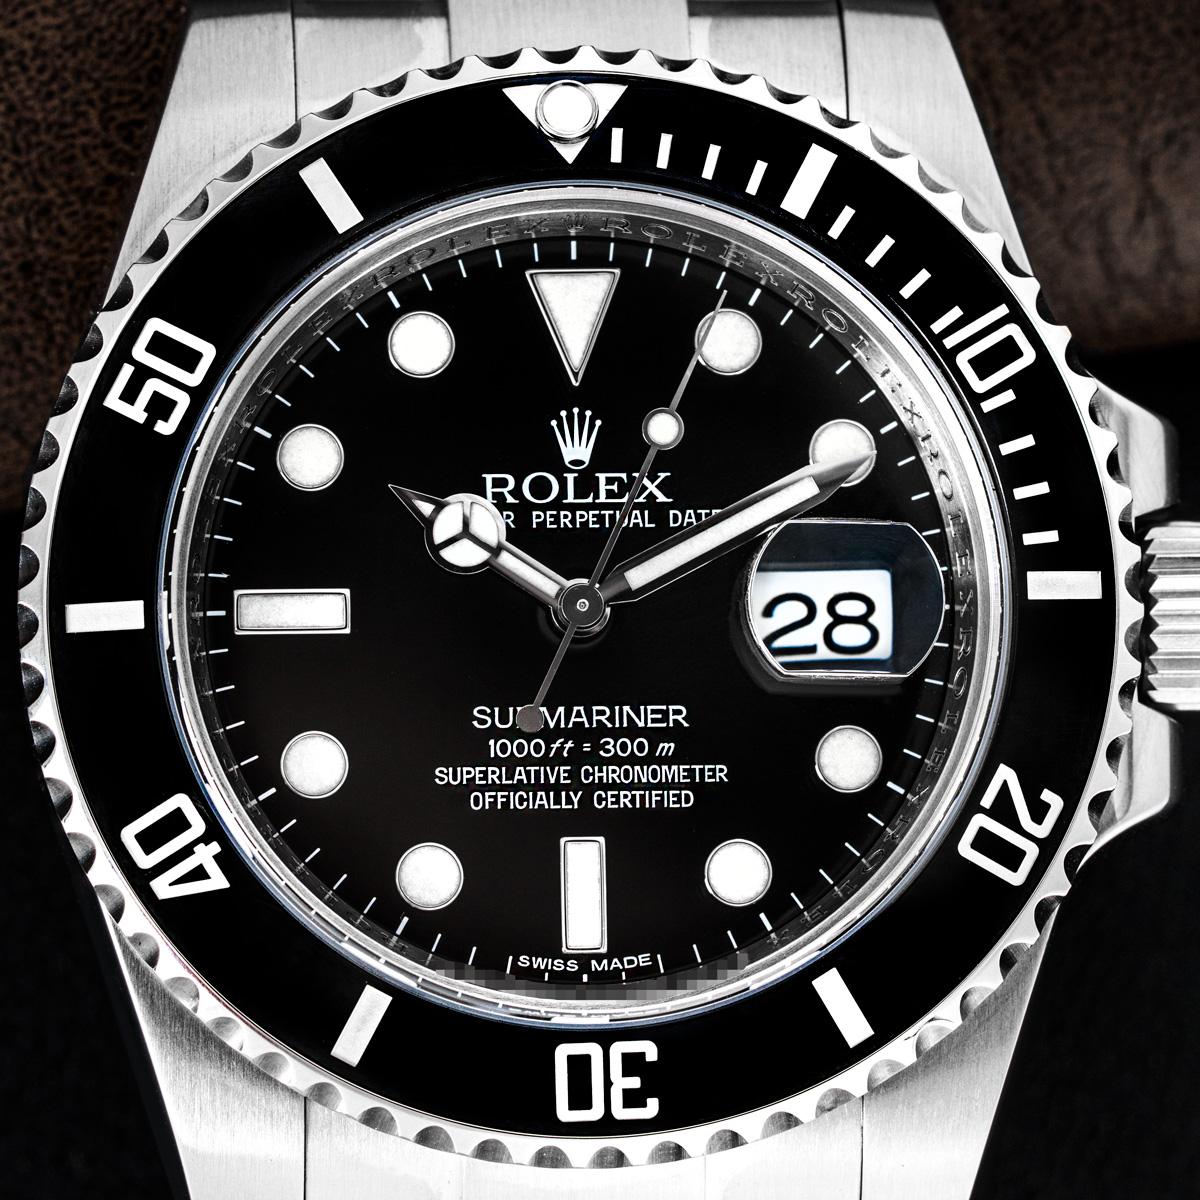 Eine Submariner Date aus Edelstahl von Rolex. Sie verfügt über ein schwarzes Zifferblatt, eine Datumsanzeige und eine einseitig drehbare Lünette mit 60-Minuten-Teilung. Ausgestattet mit einem Oyster-Armband und einer Oysterlock-Faltschließe. Die Uhr